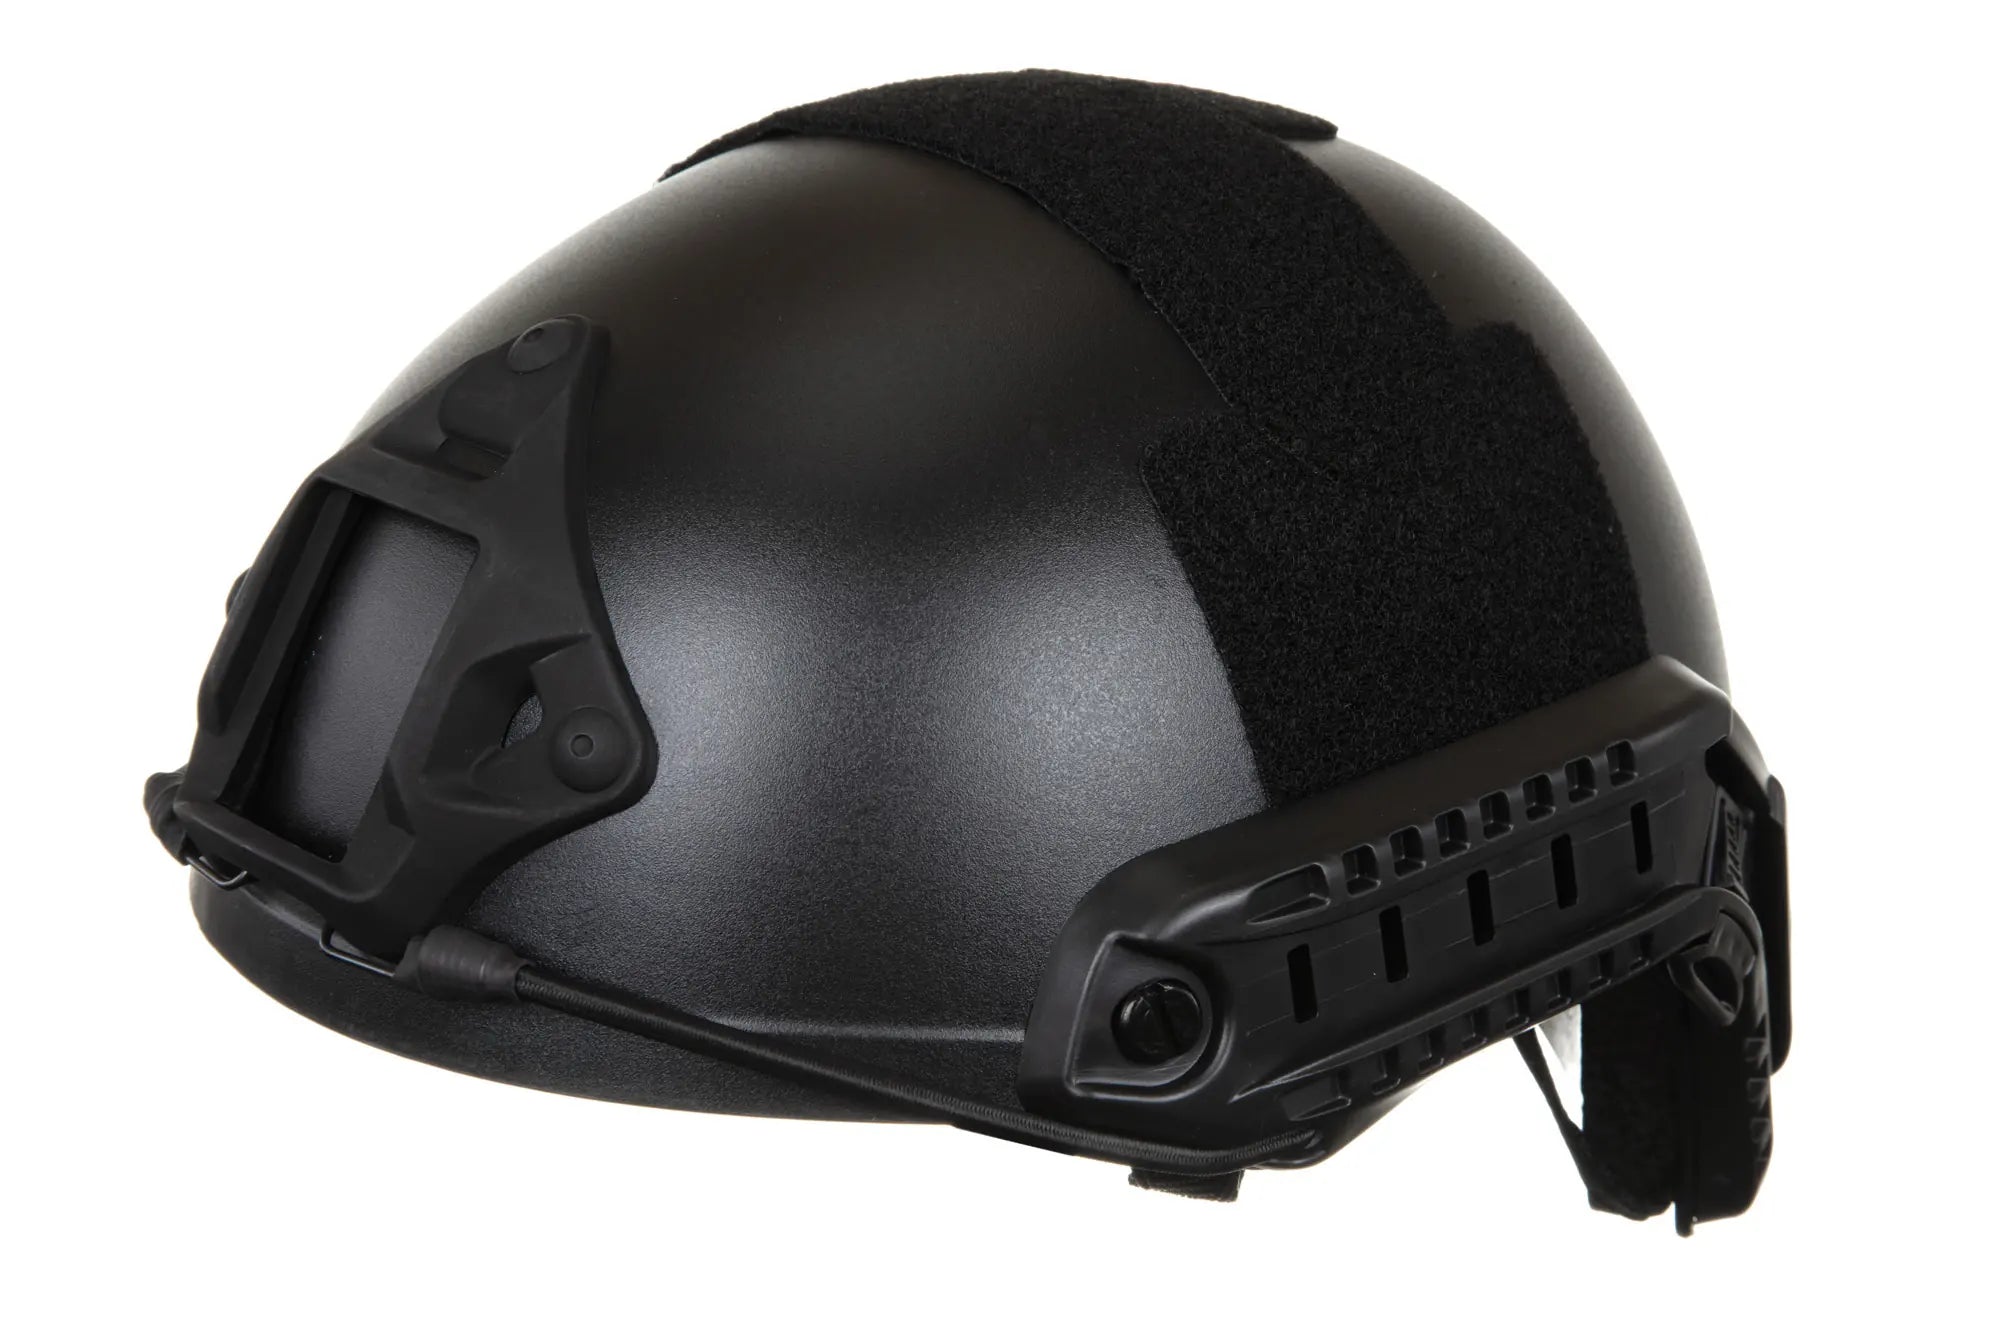 Emerson Gear Fast MH Eco helmet replica Black-2